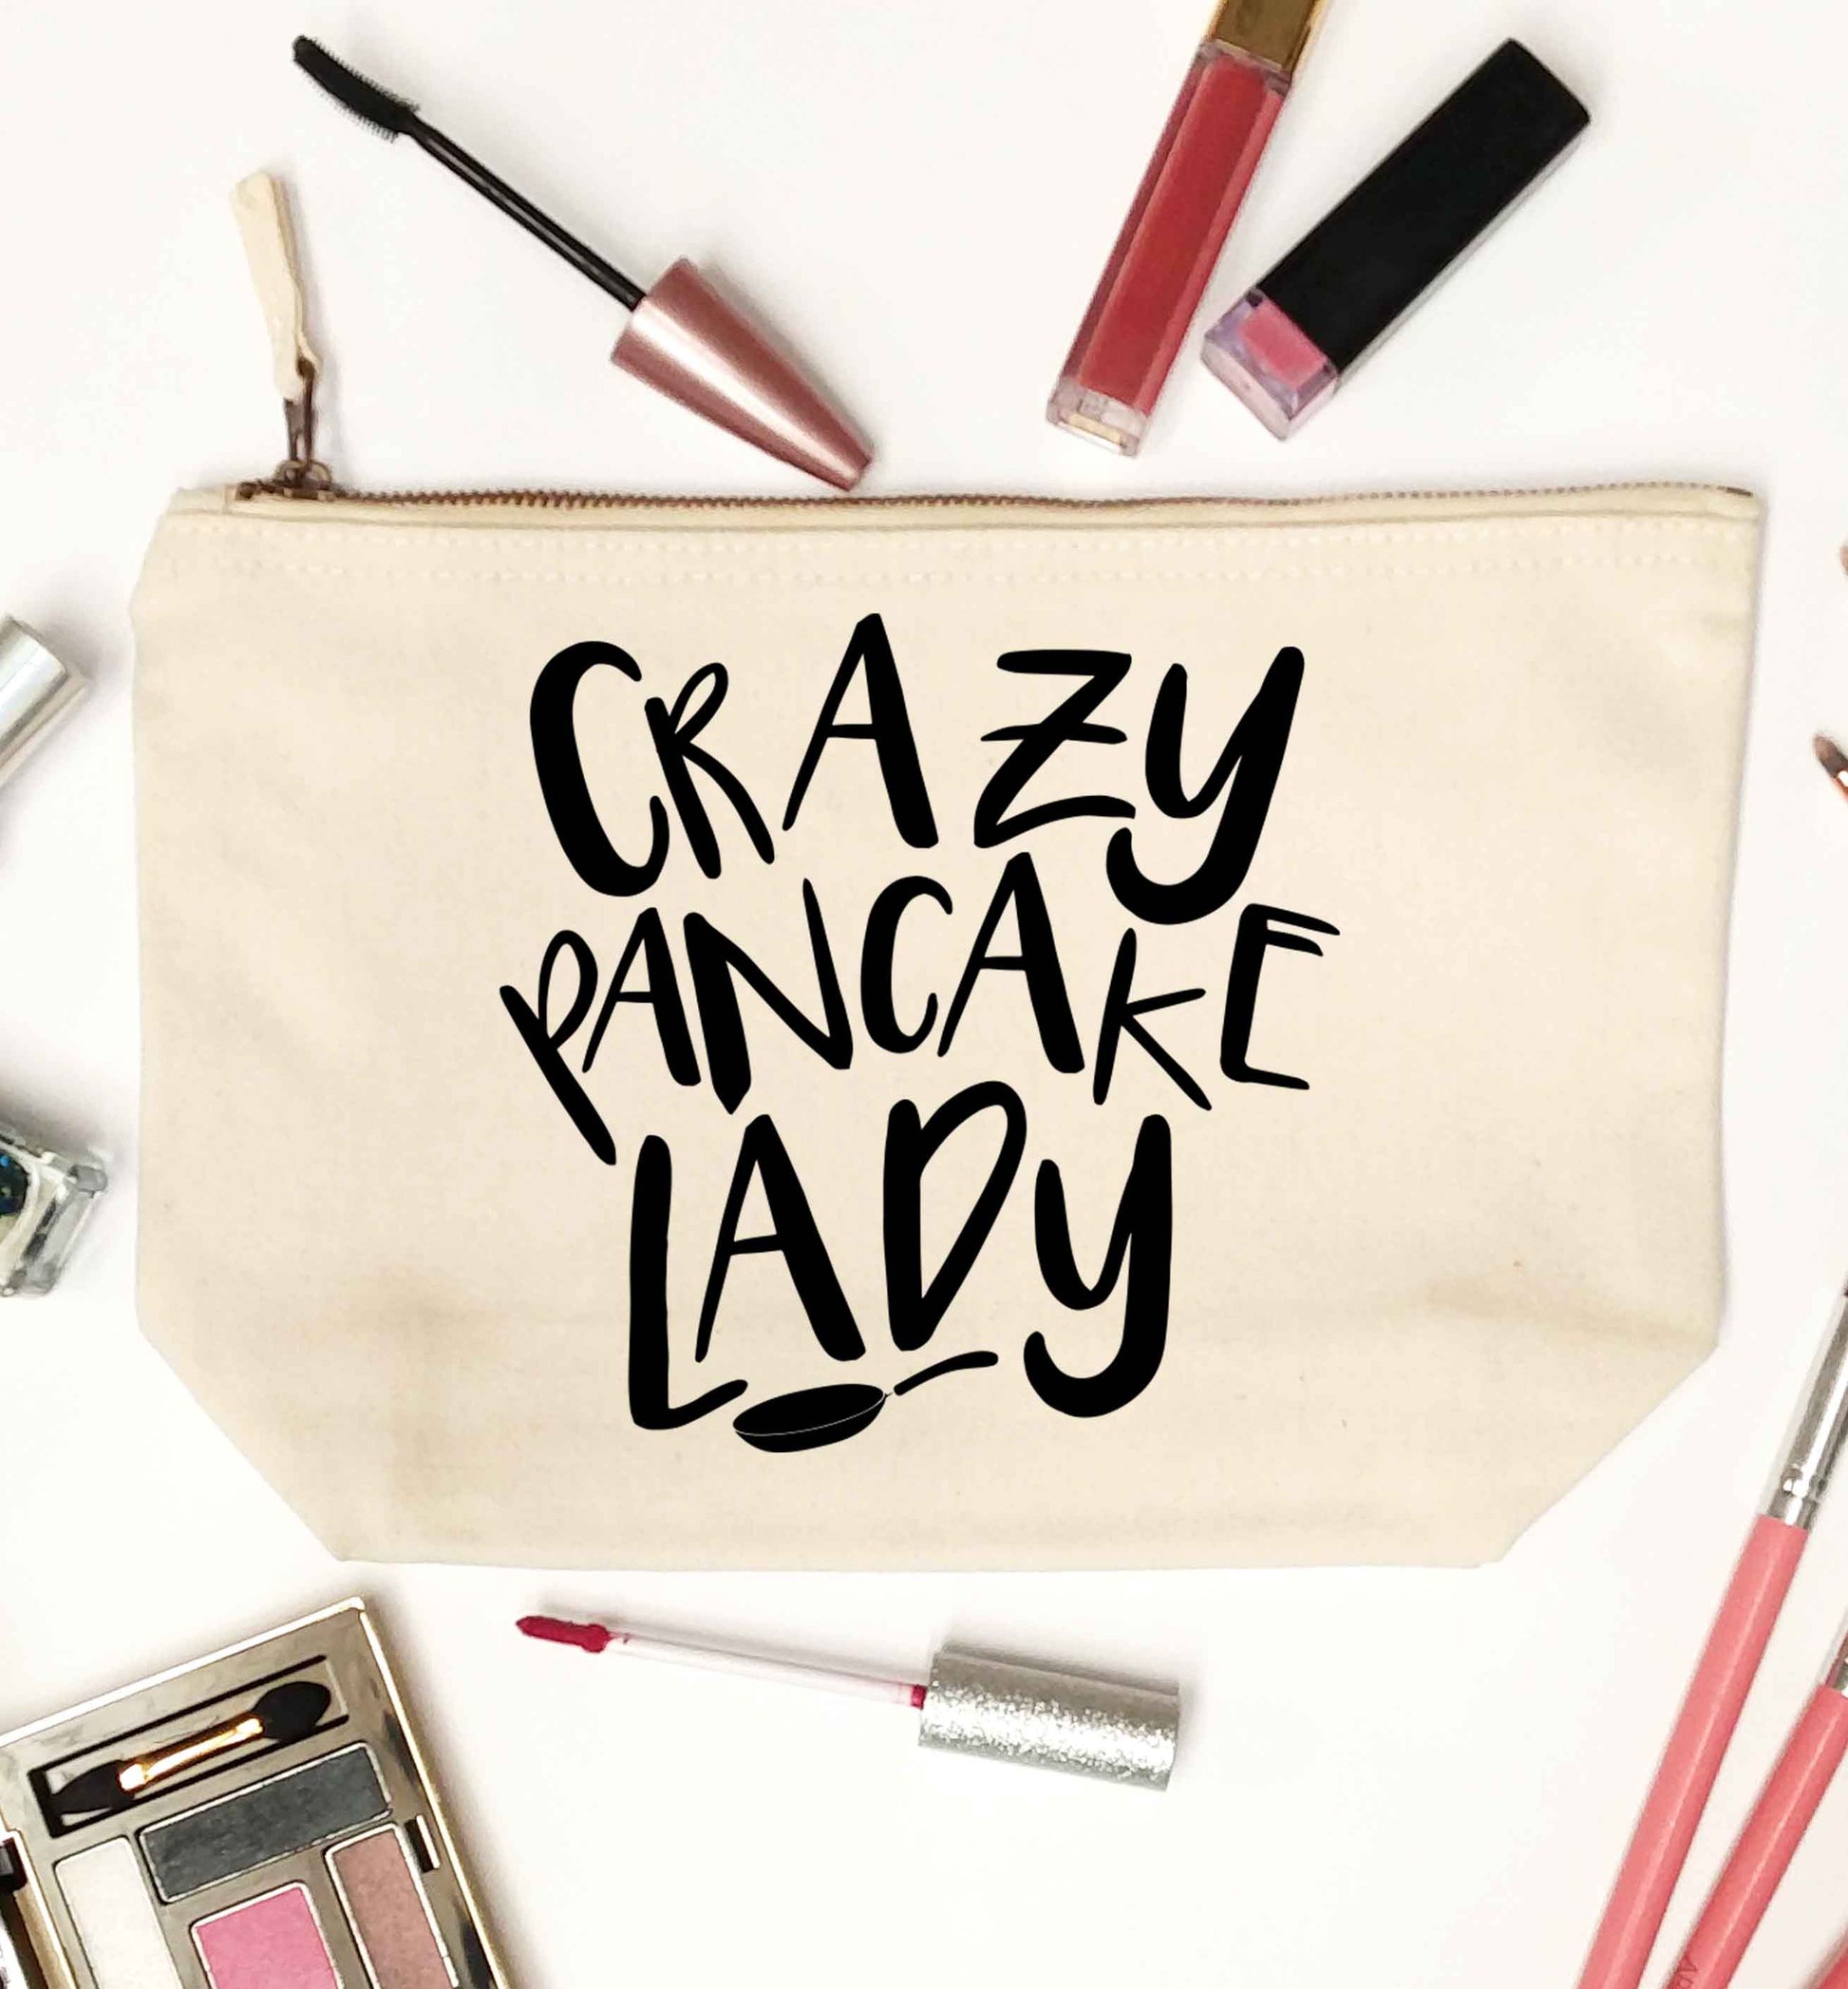 Crazy pancake lady natural makeup bag